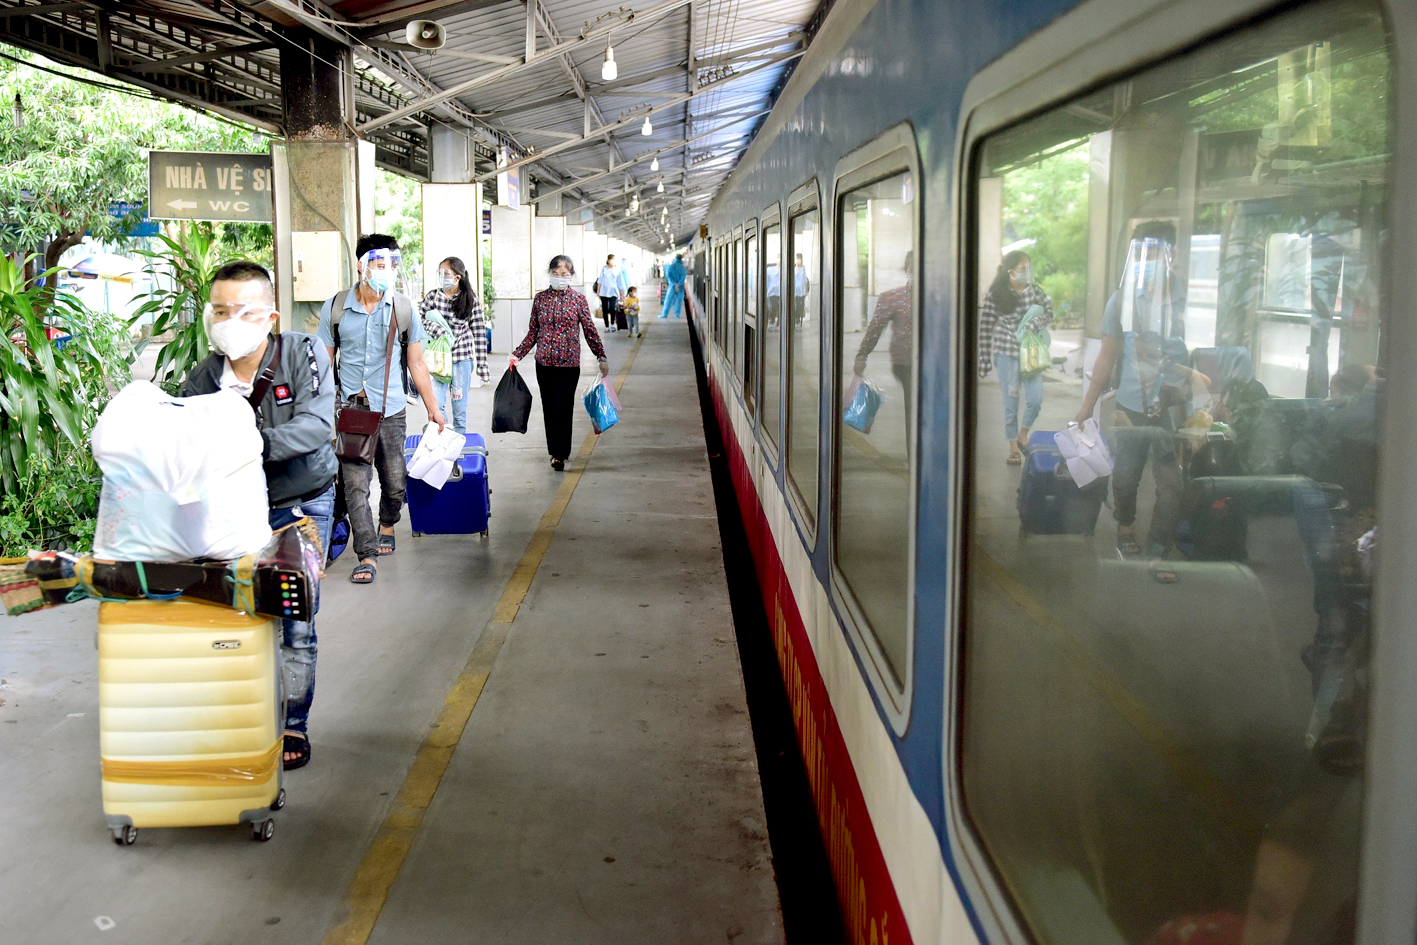 Ngành đường sắt cần có sự thay đổi, cạnh tranh để nâng cao chất lượng, phục vụ hành khách tốt hơn.  Trong ảnh: Khách đi xe lửa tại ga Sài Gòn - ẢNH: NGUYỄN QUANG